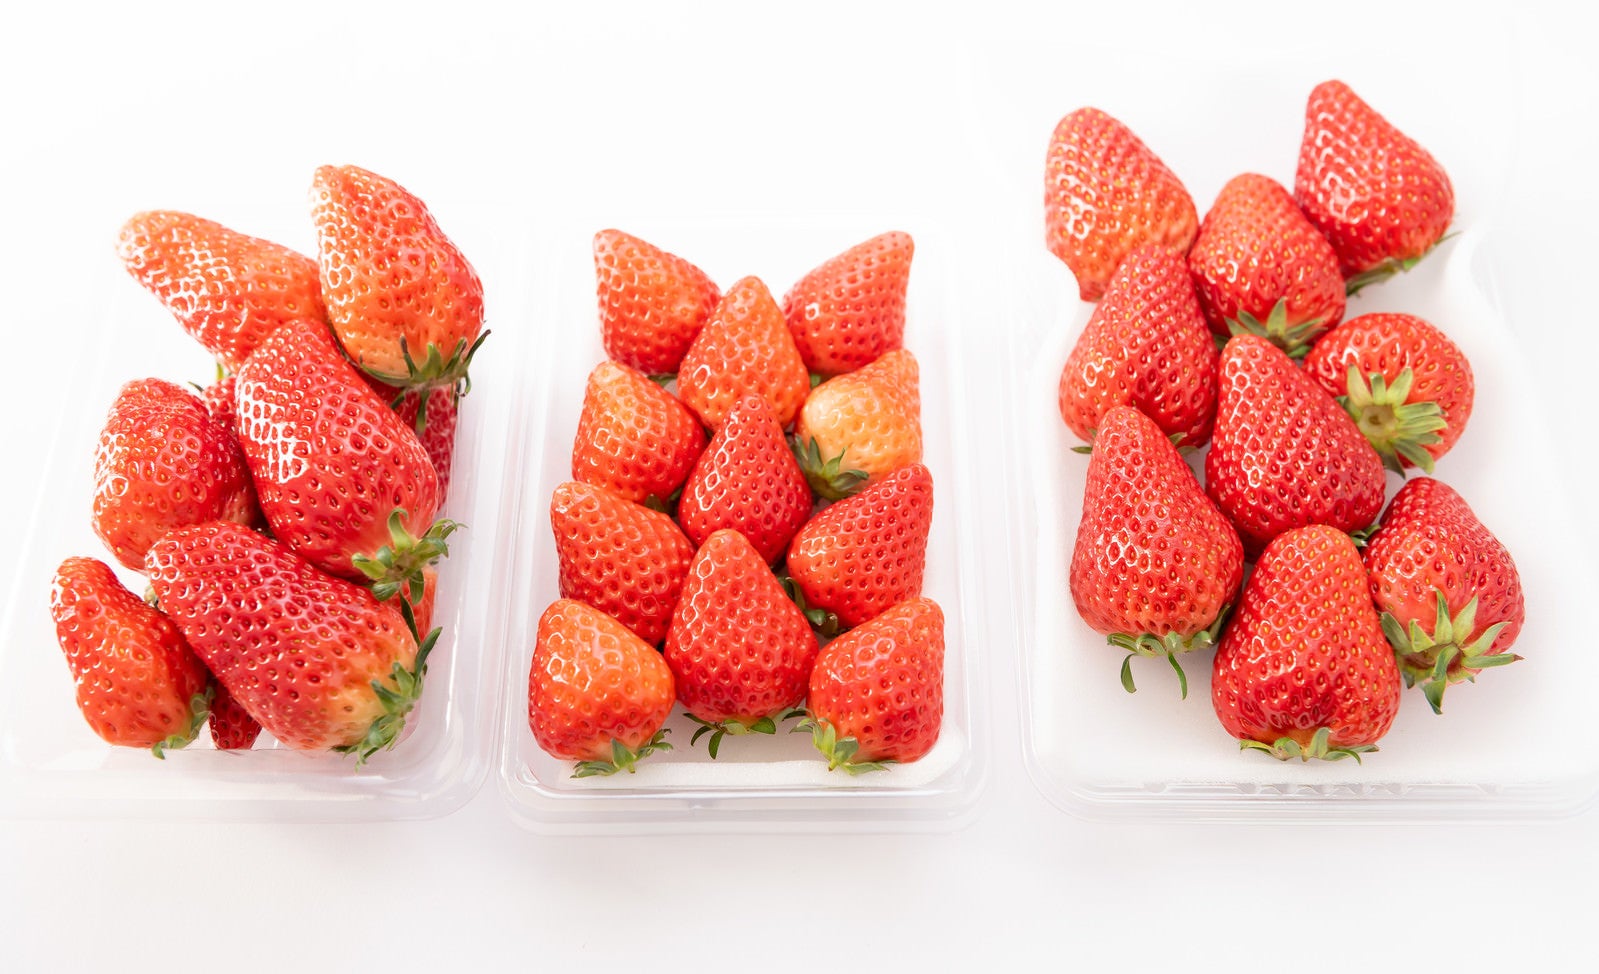 「パックで売られていた苺の品種比較（章姫、さがほのか、紅ほっぺ）」の写真